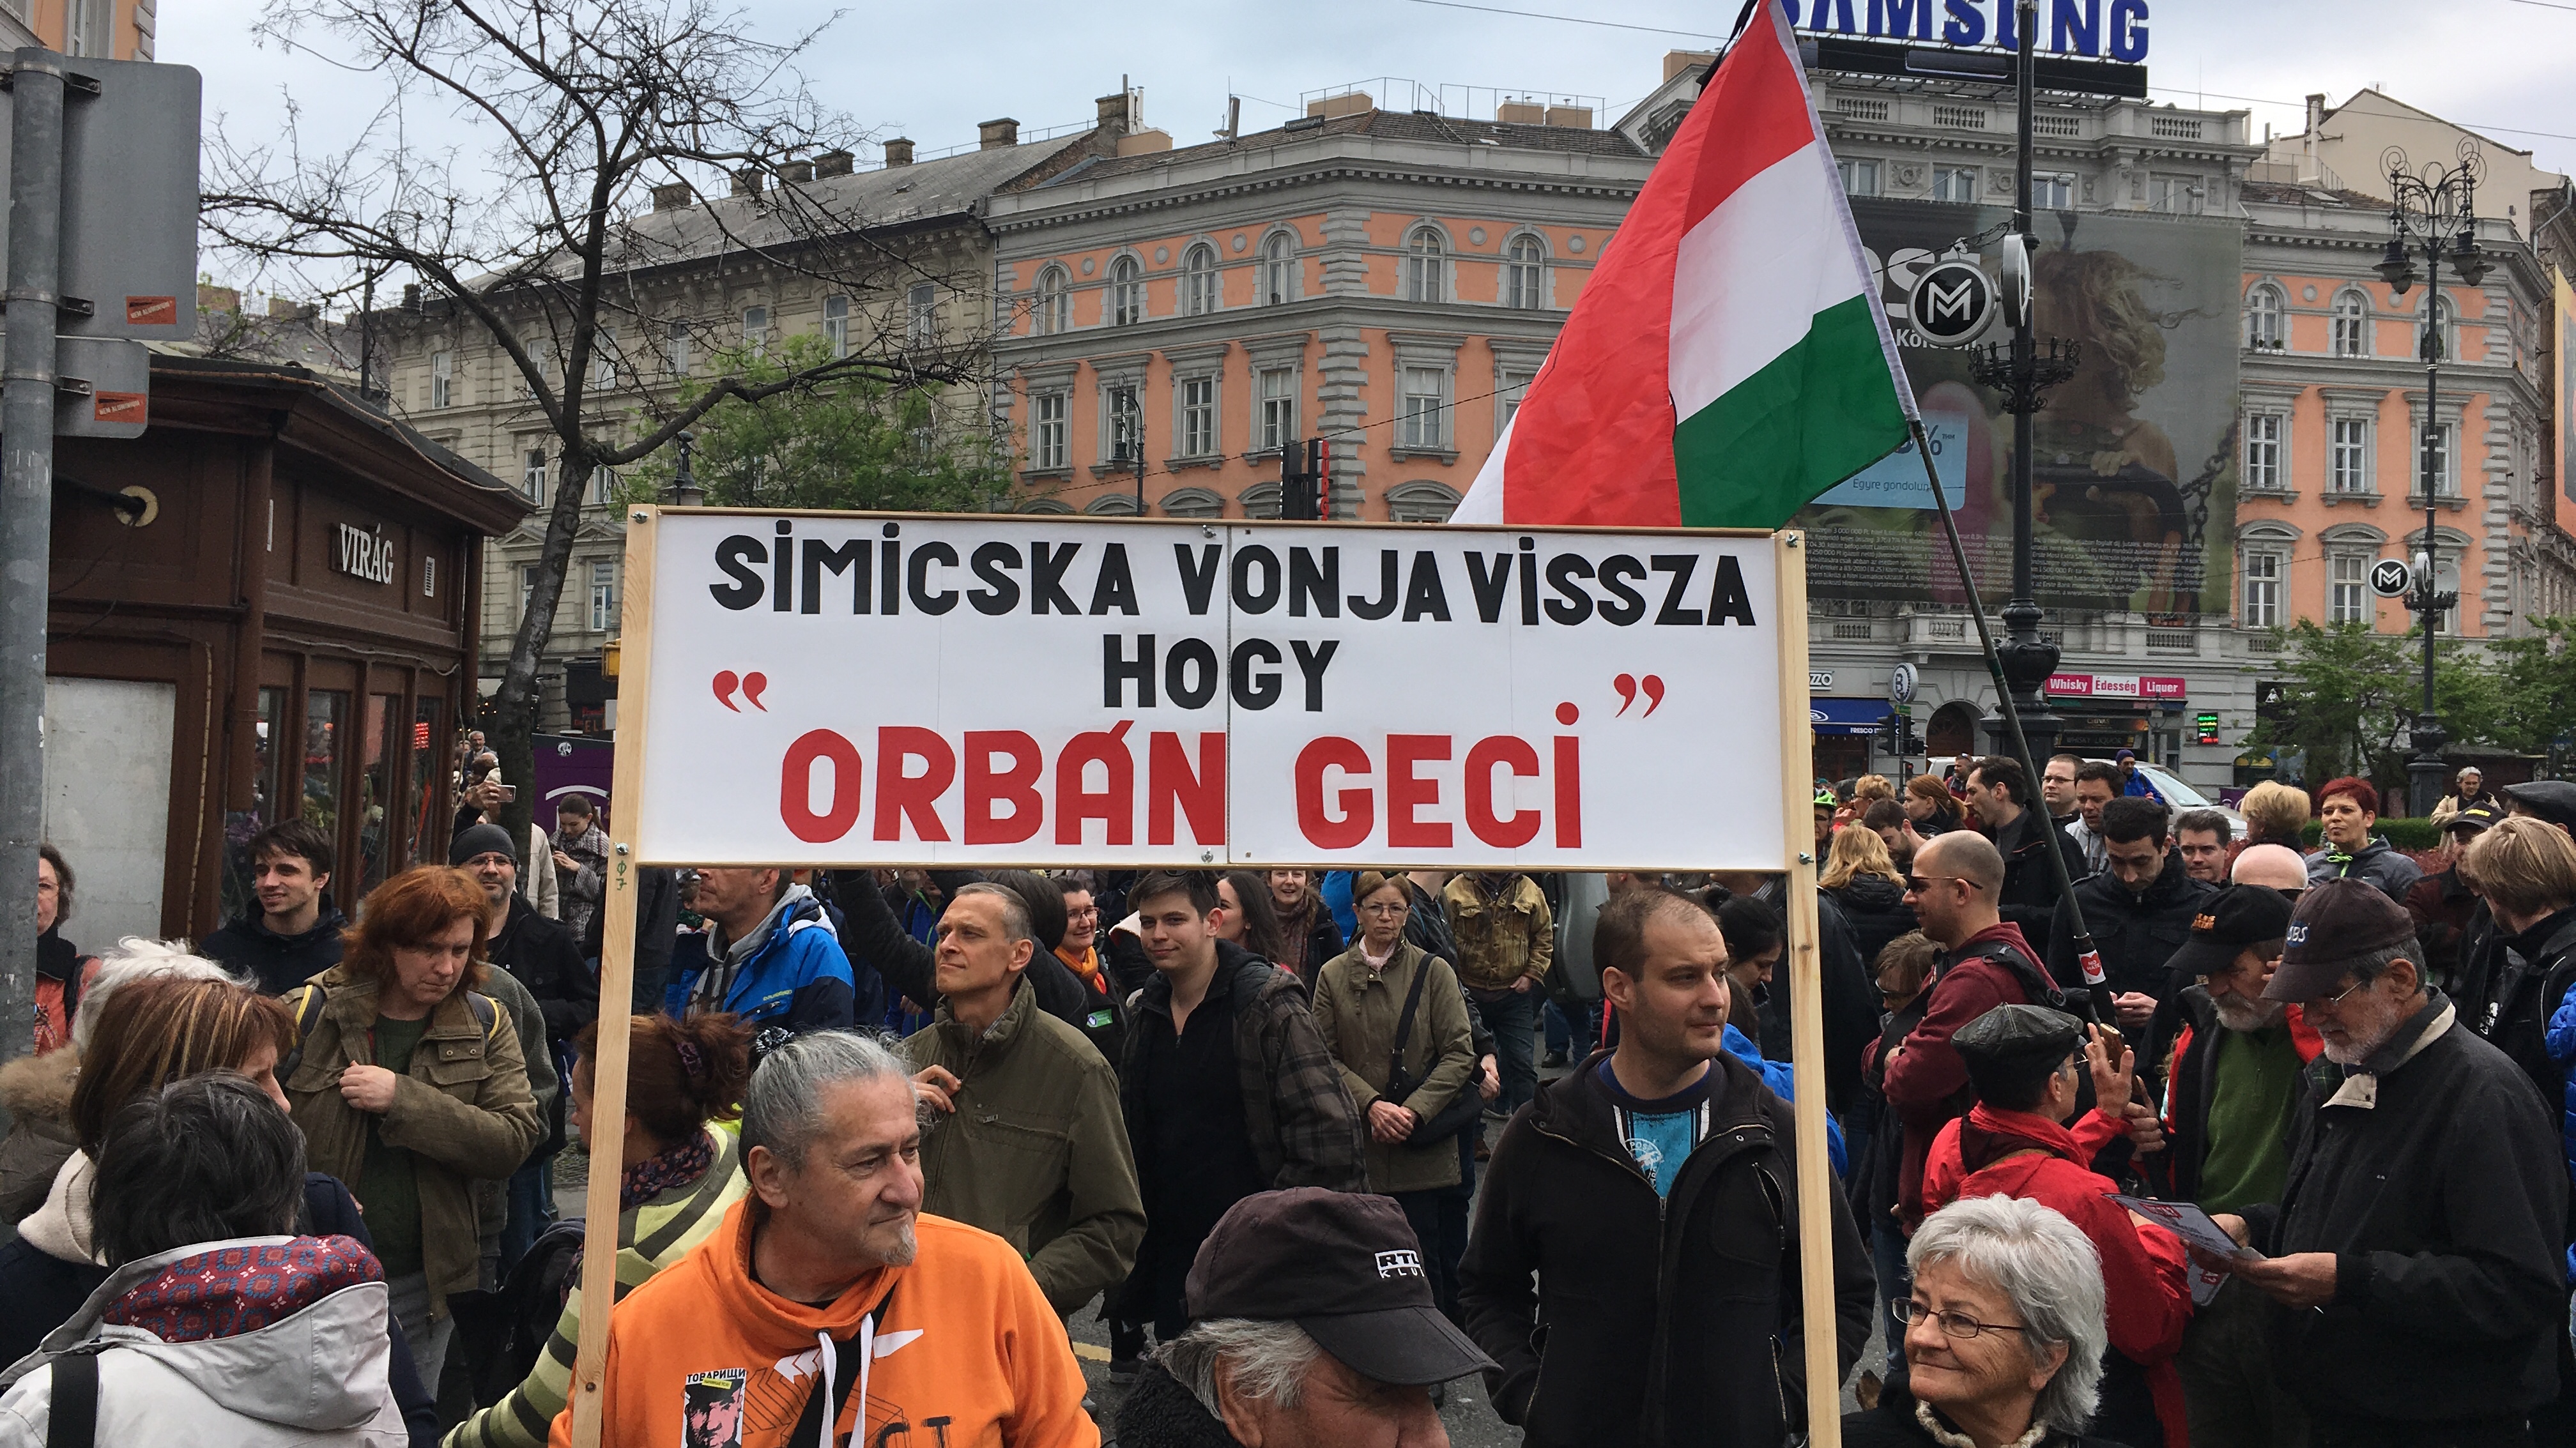 Körbefutott a világsajtón a nagy budapesti békemenet híre